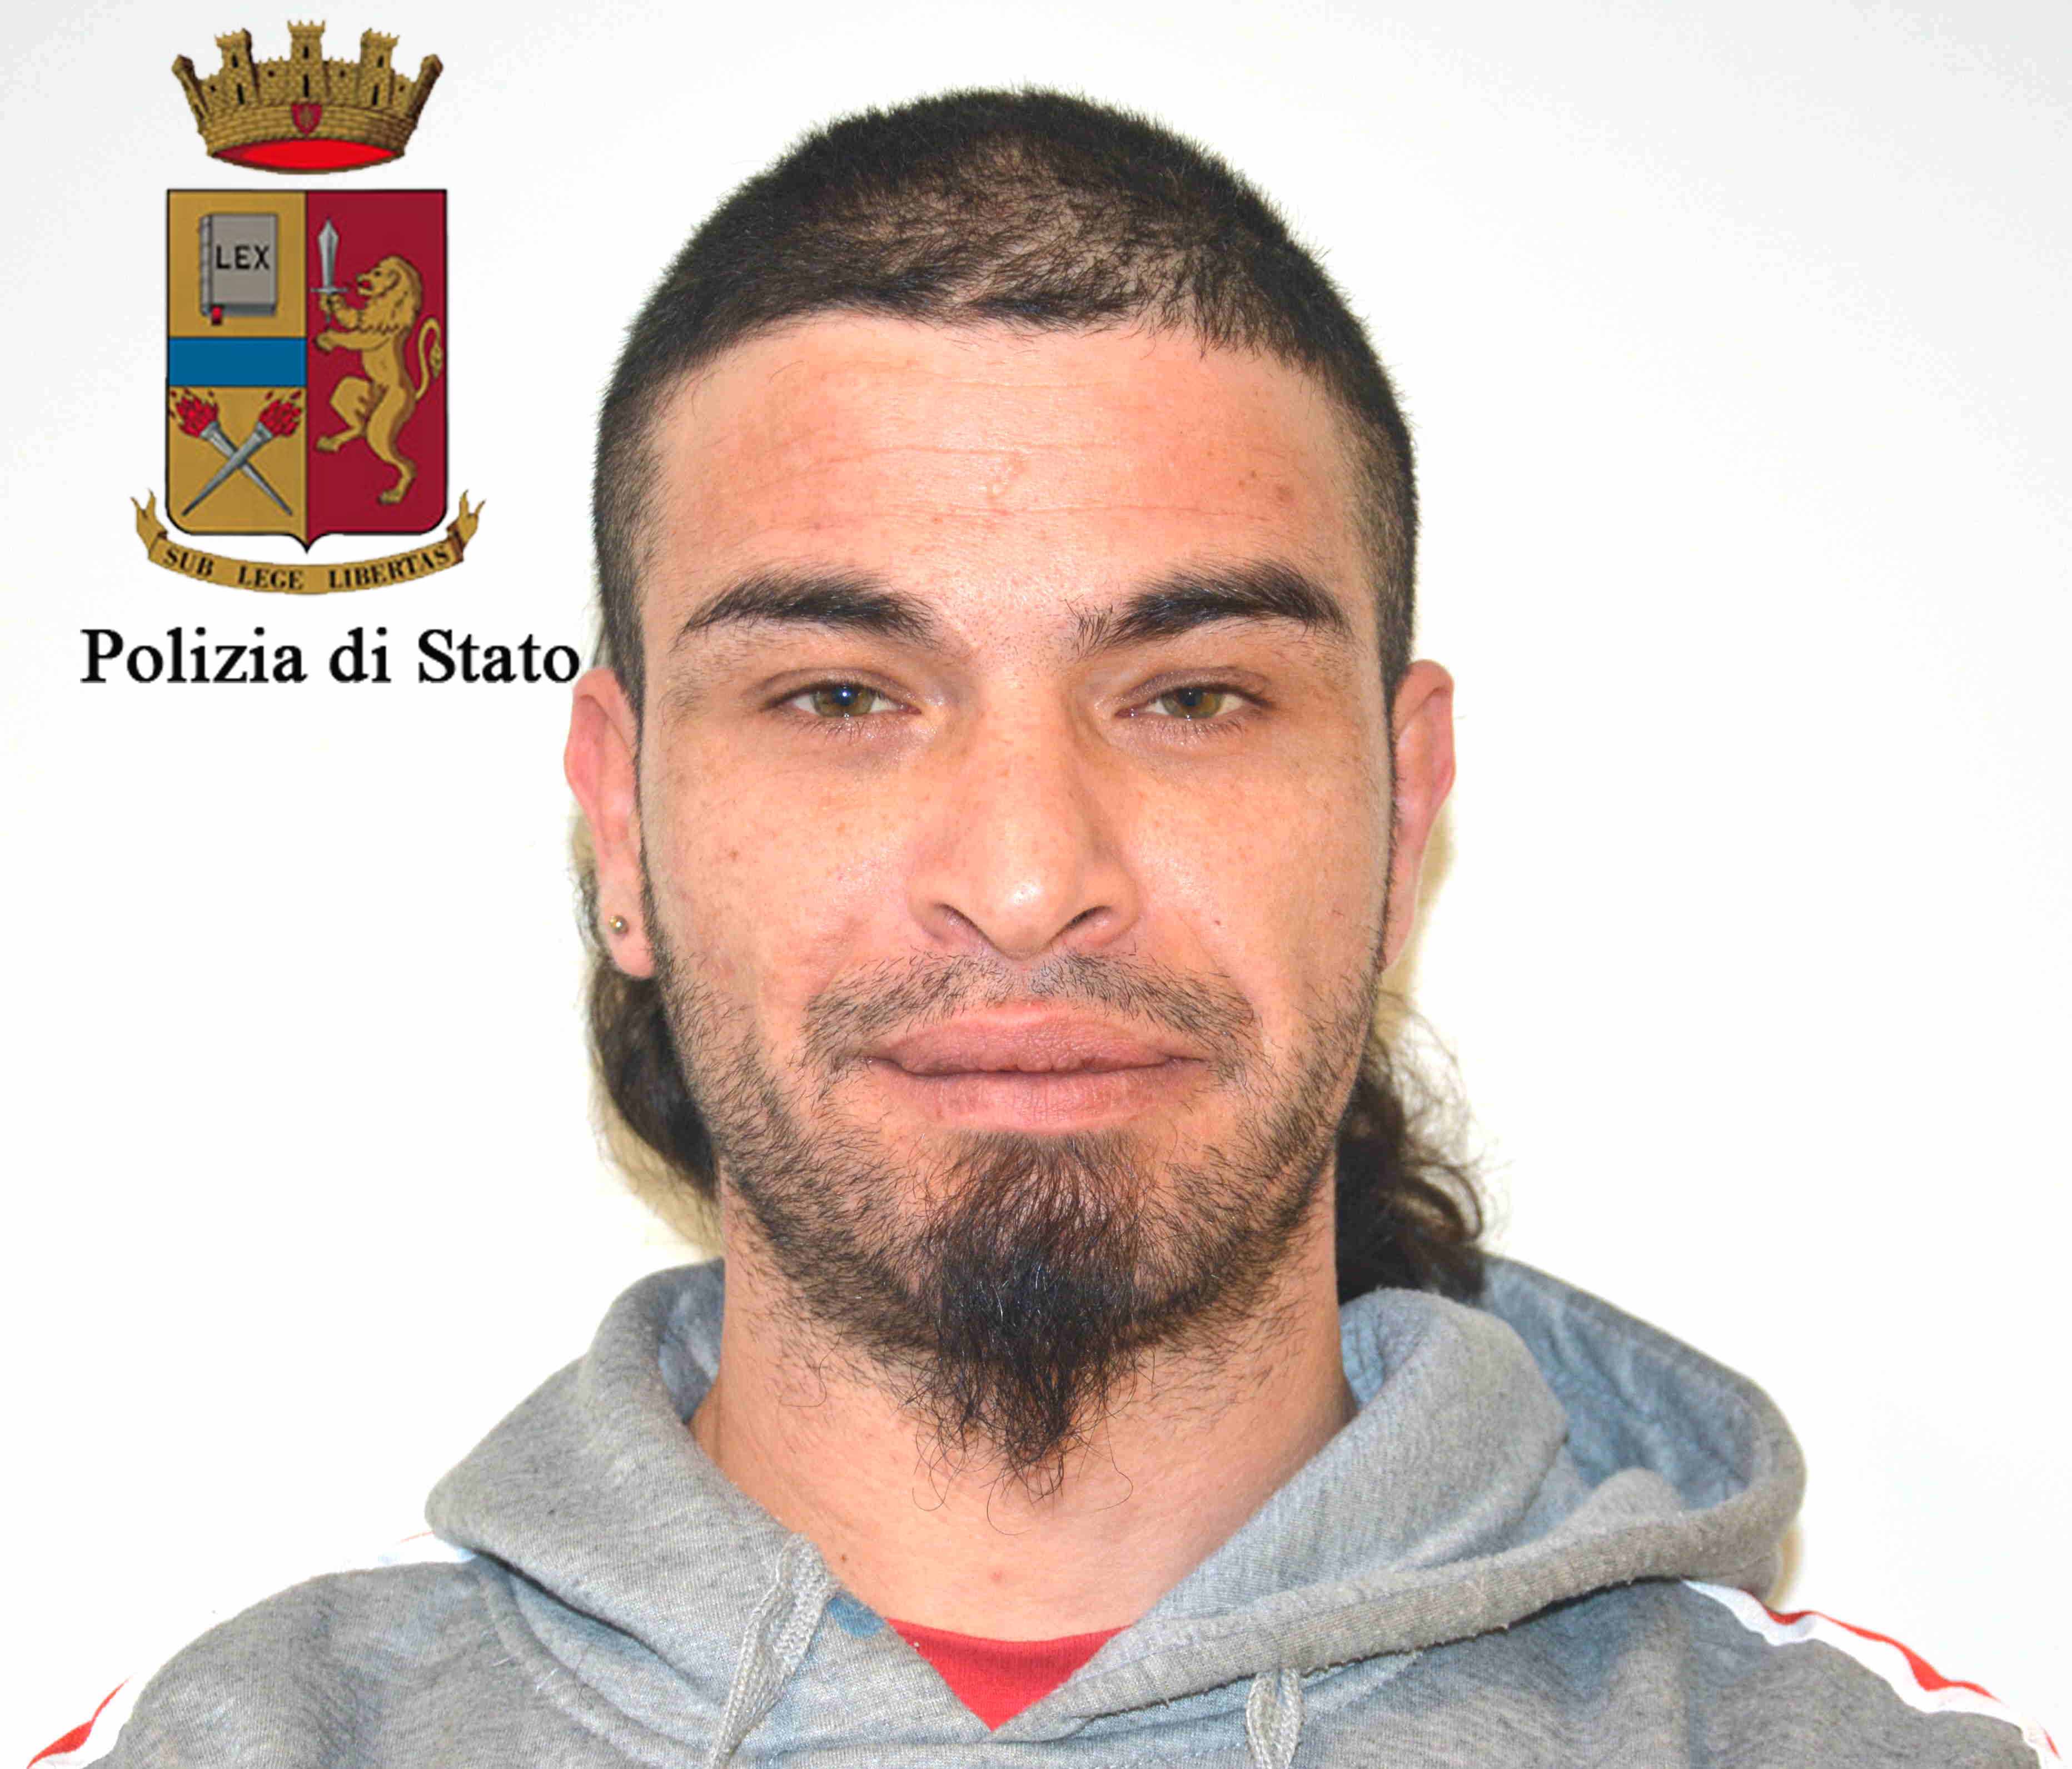  Ragusa – Arrestato giovane pluripregiudicato. Era agli arresti domiciliari ma continuava ad evadere